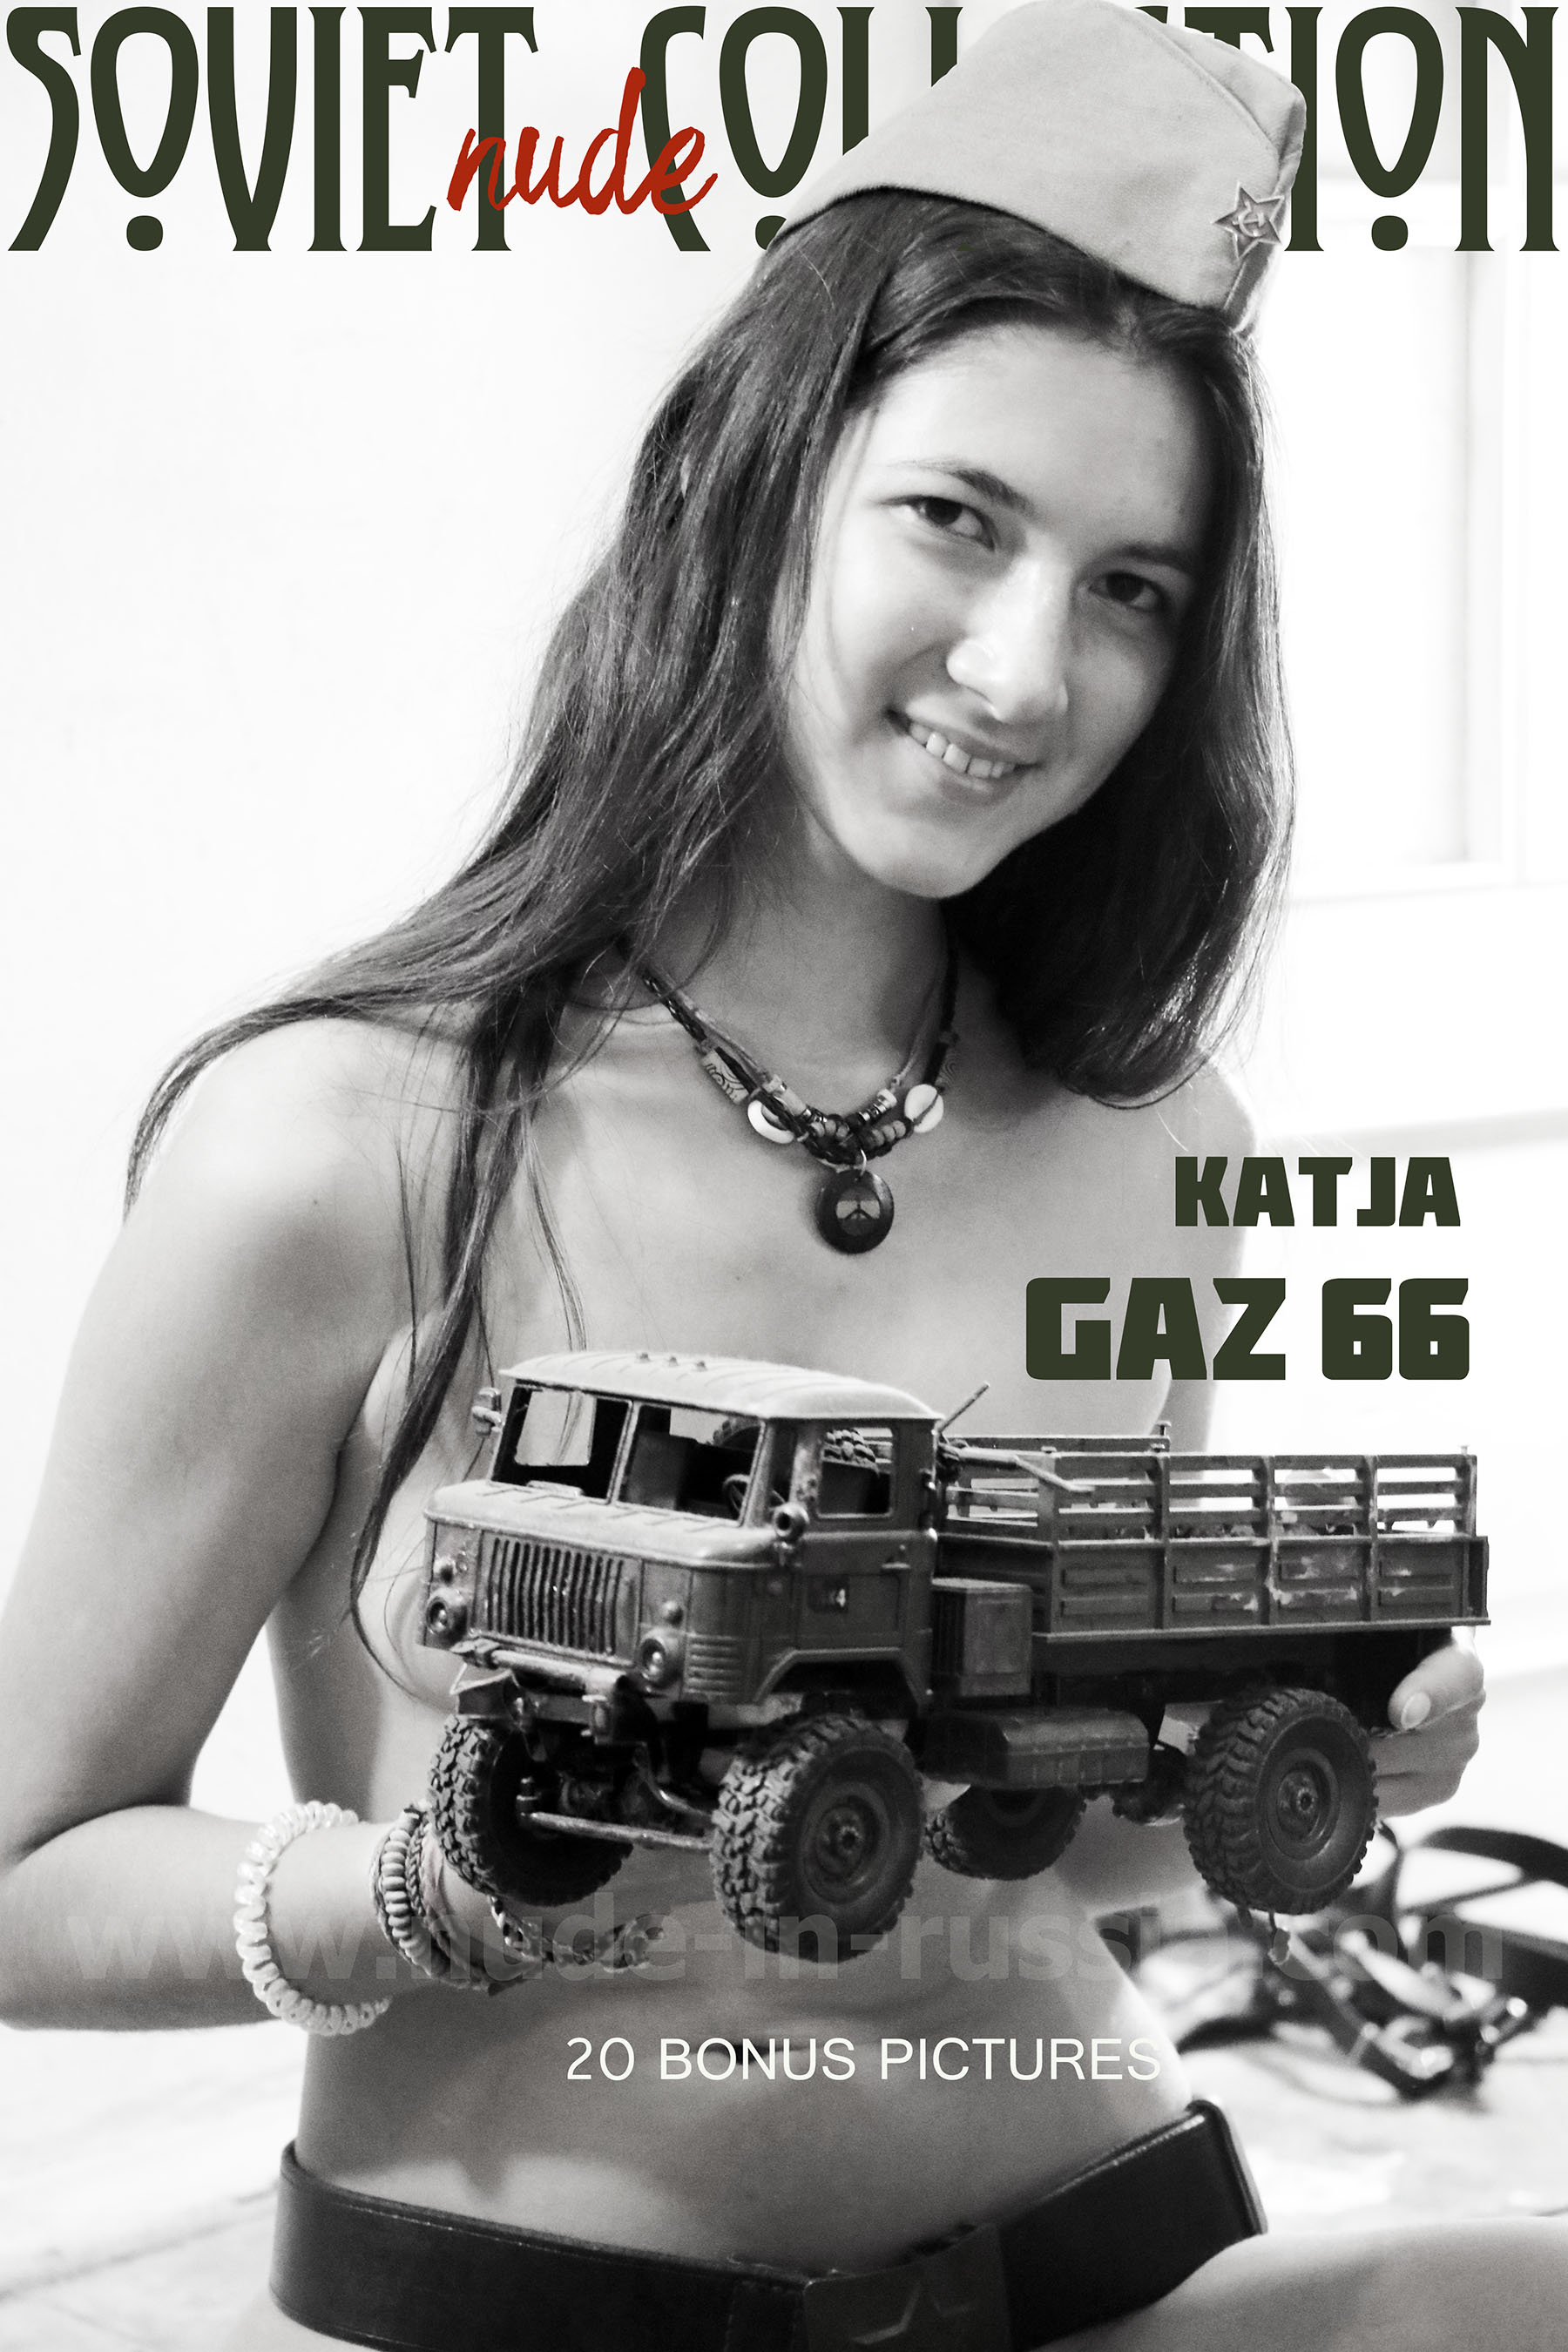 NIR-2021-03-19 - Katja P 2 - Soviet Collec (1).jpg